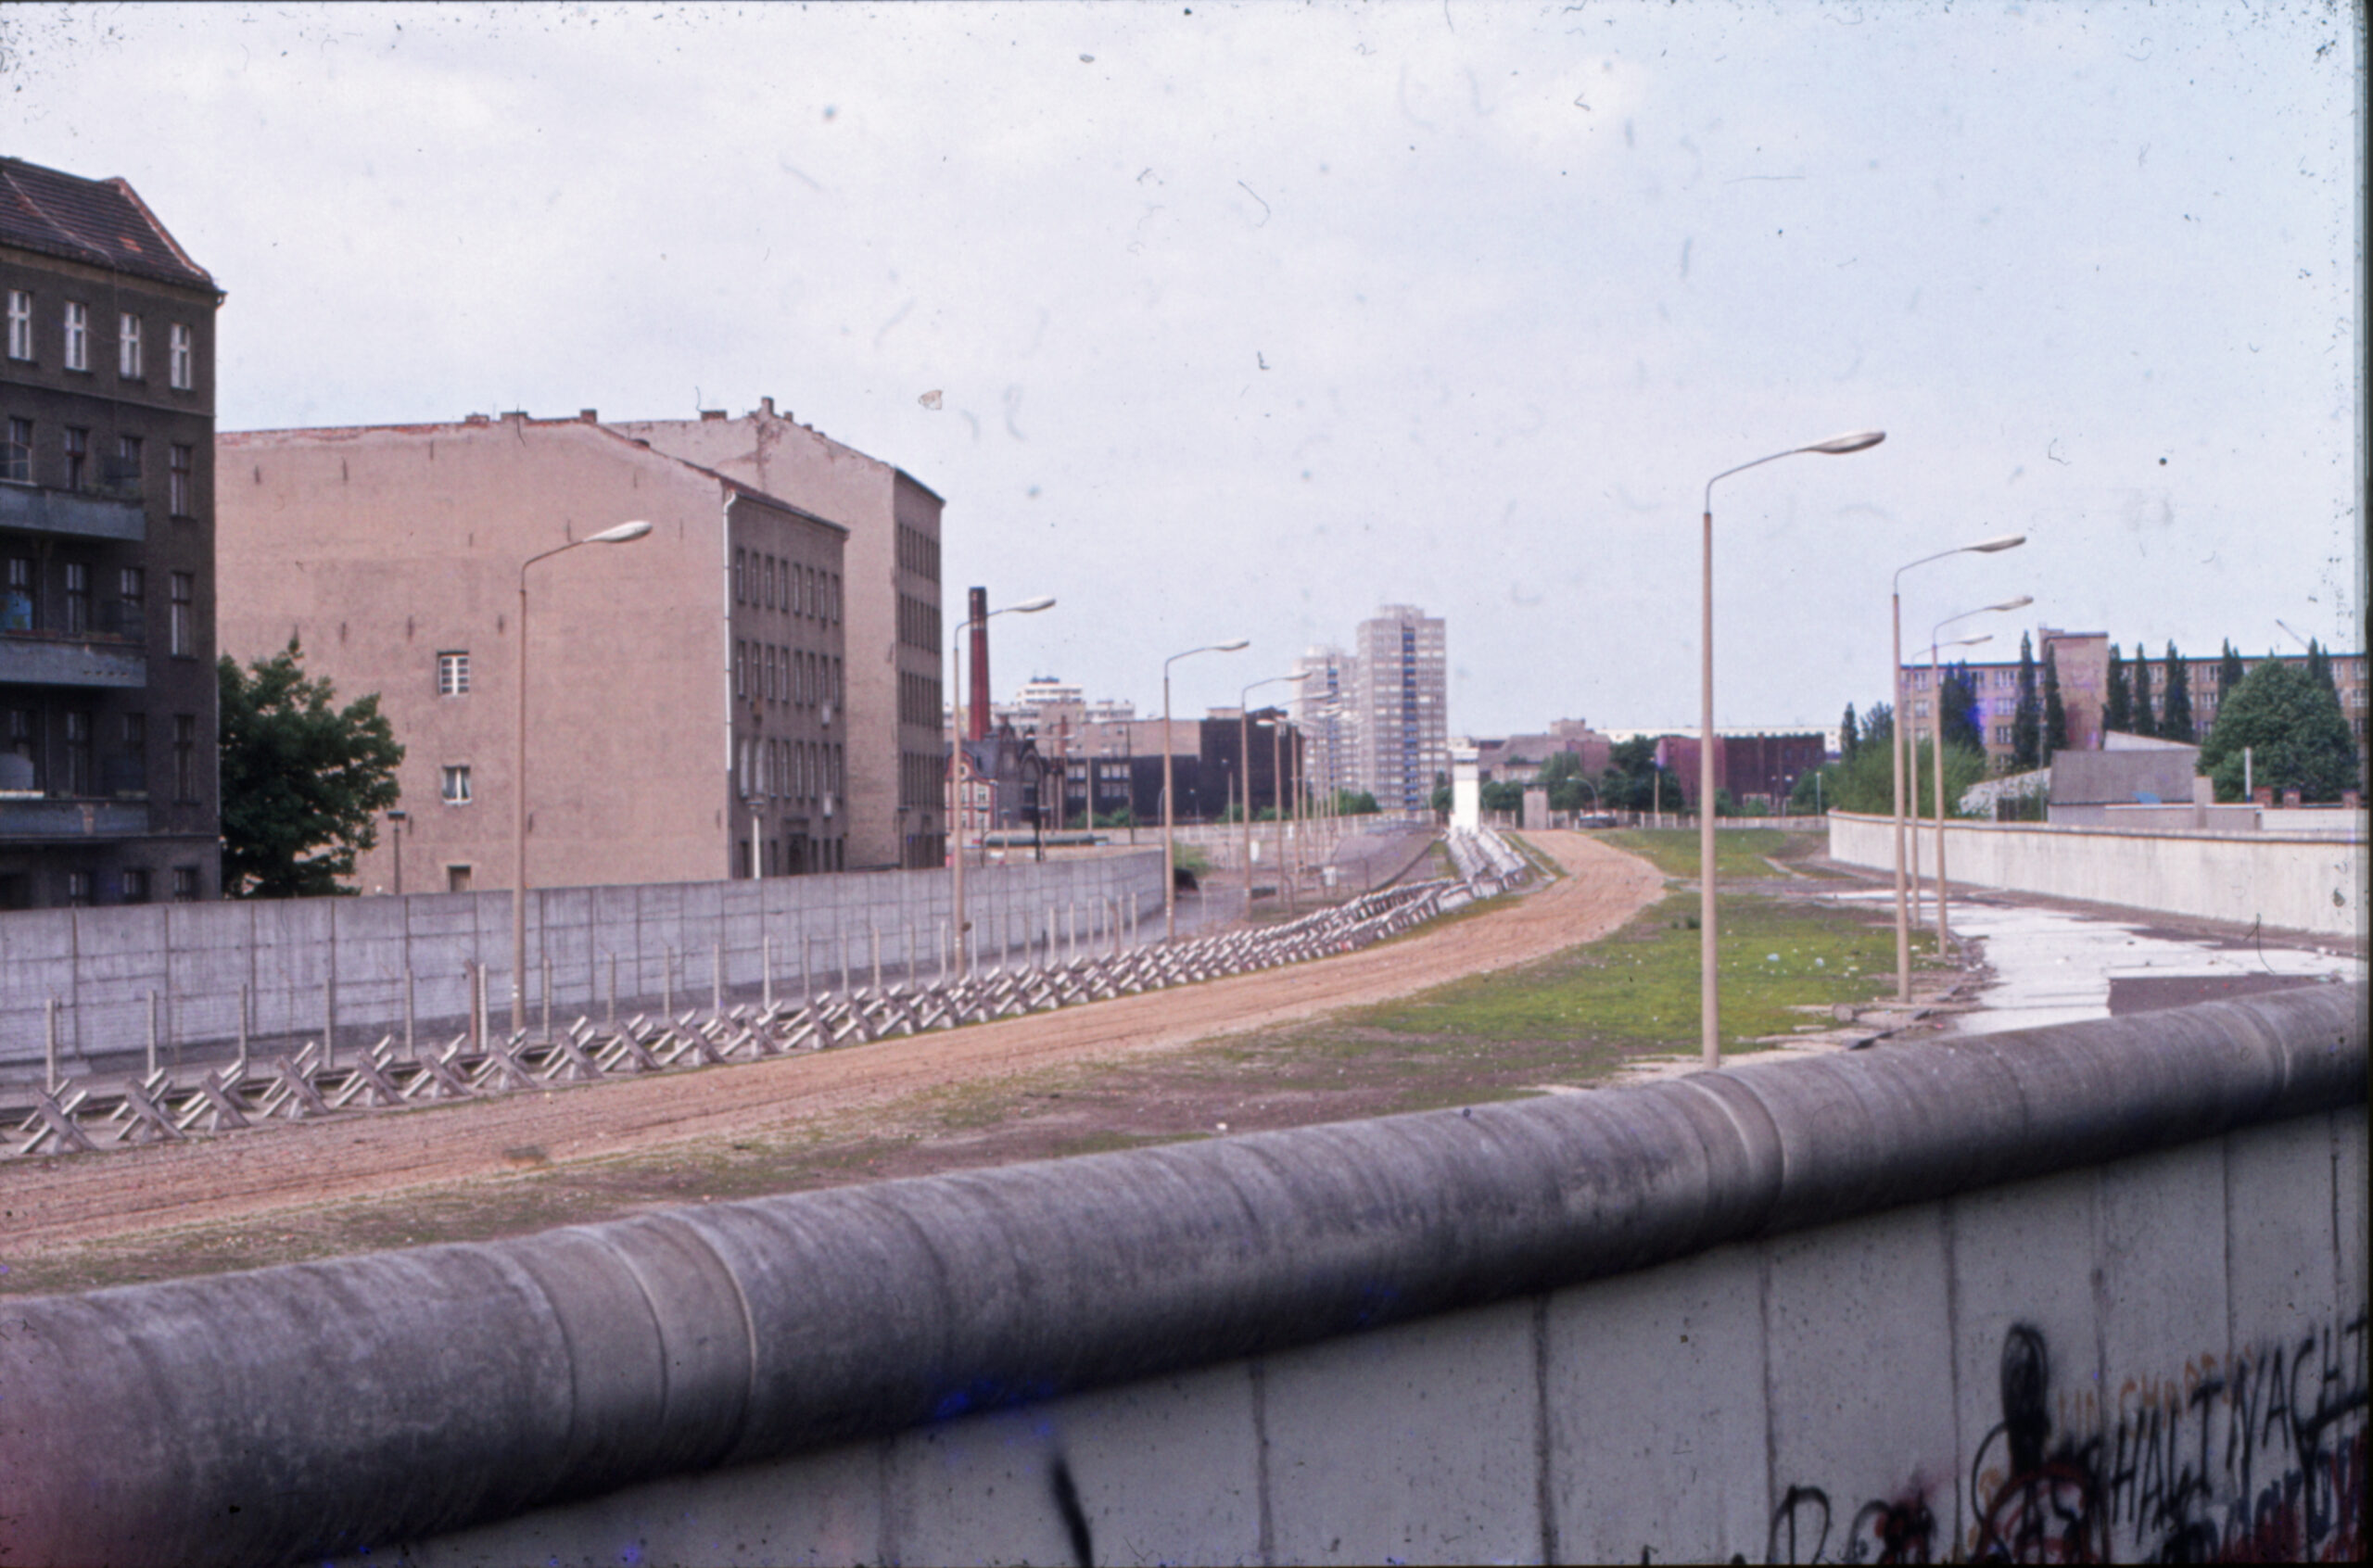 De Berlijnse Muur in 1985